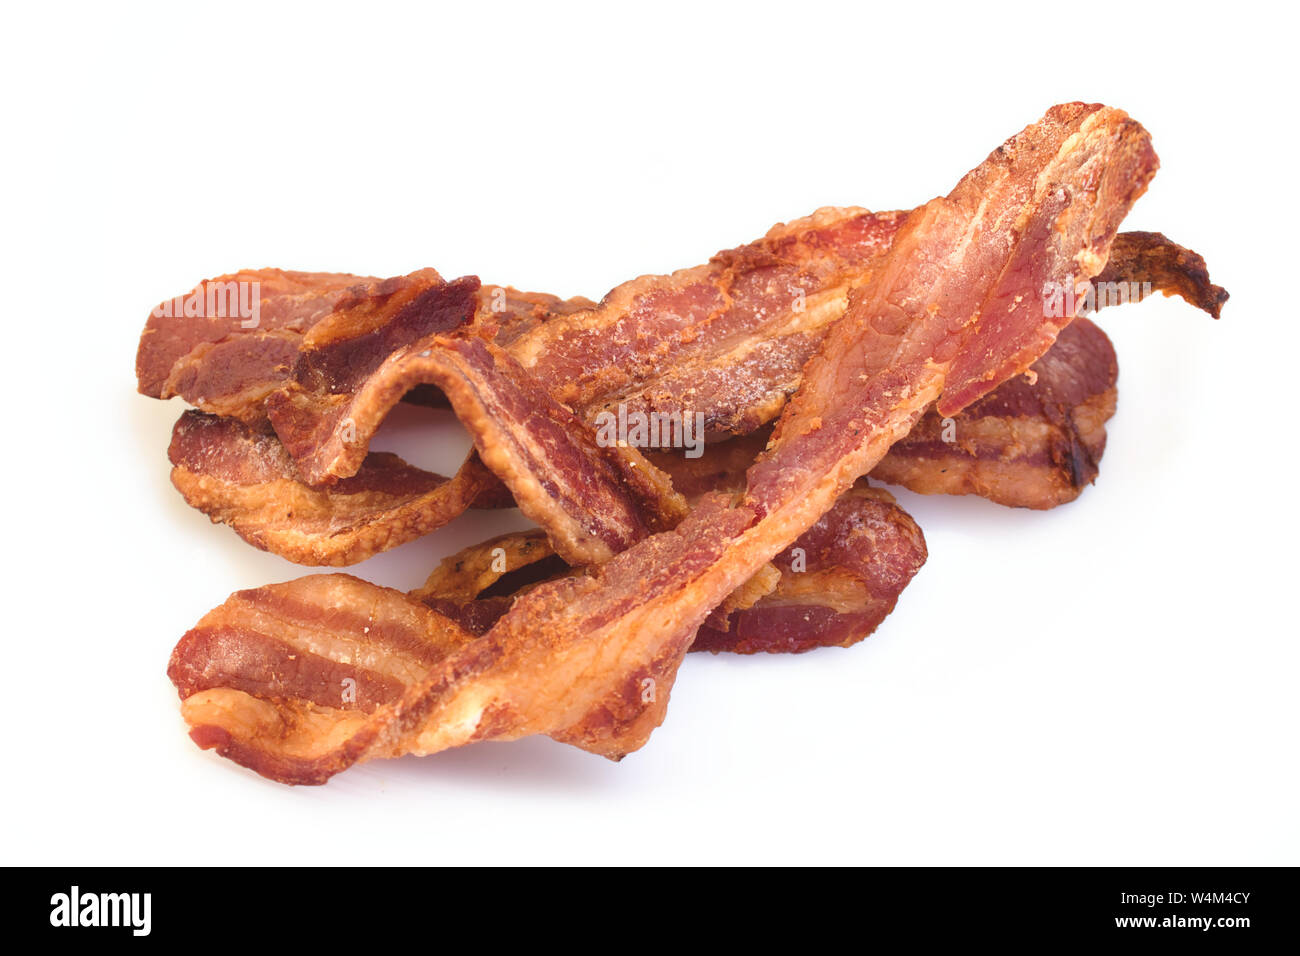 Bacon croccante rashers isolata contro uno sfondo bianco Foto Stock